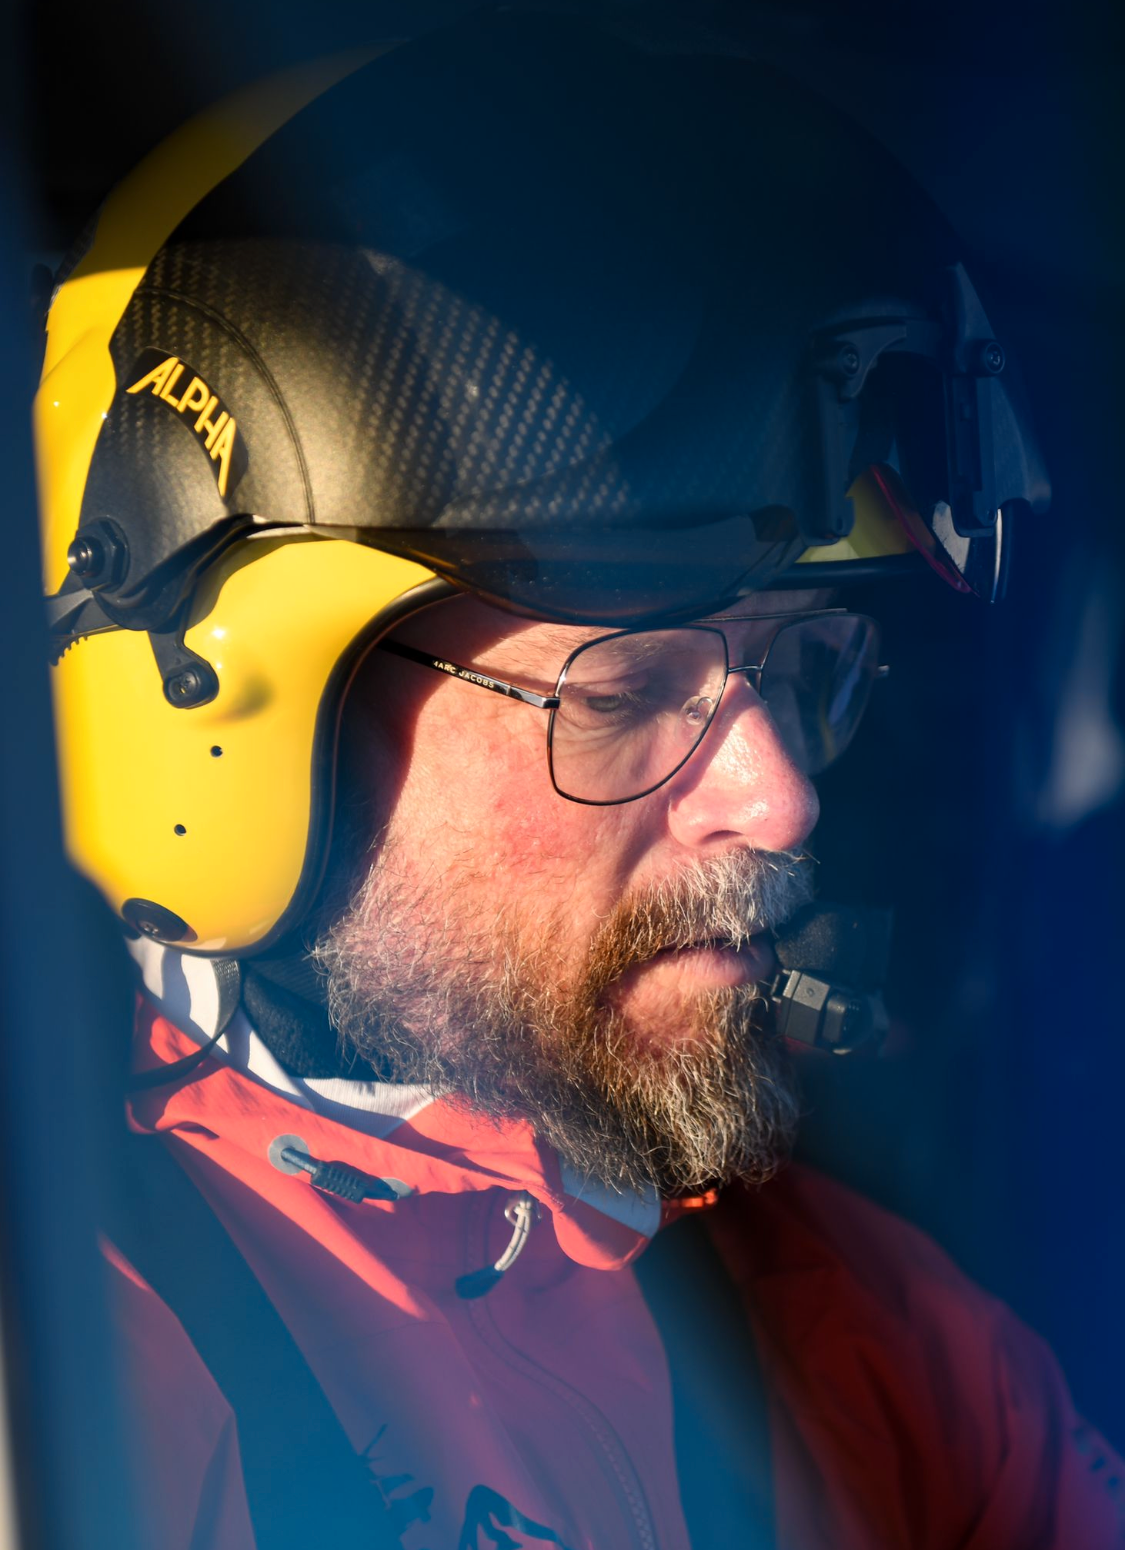 Helikopterpiloten Leif Göransson.